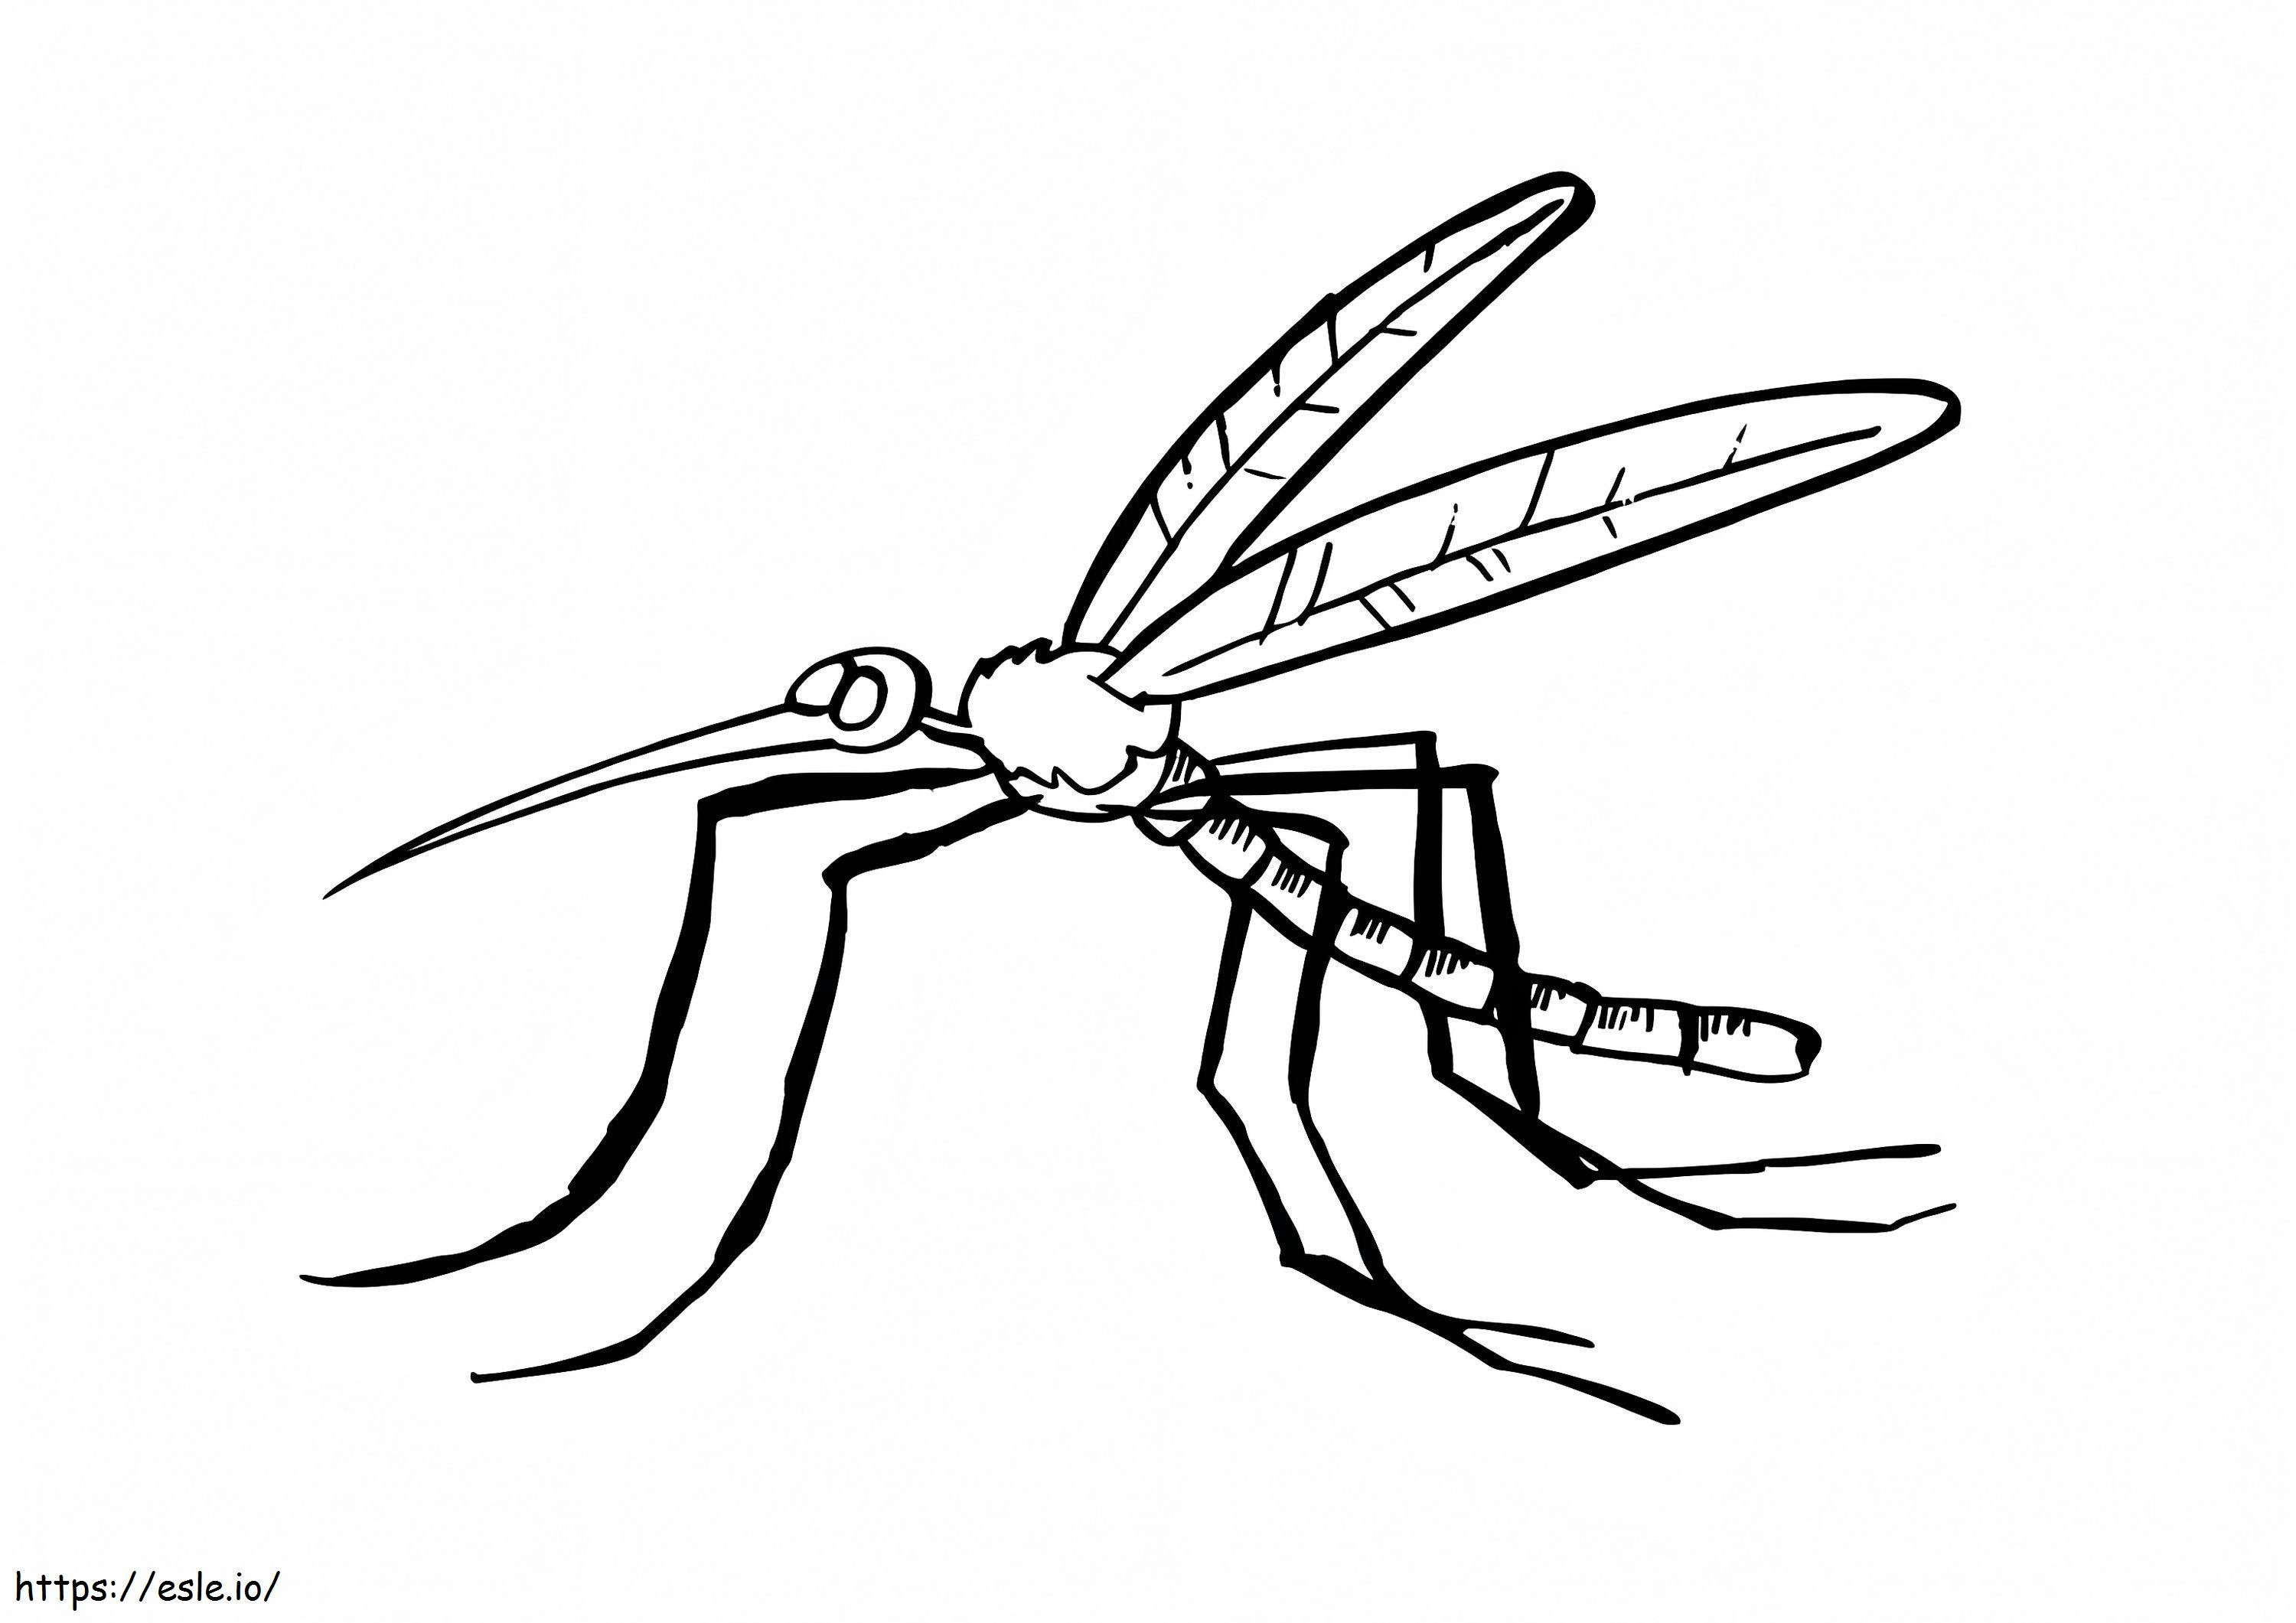 Zanzara 3 da colorare